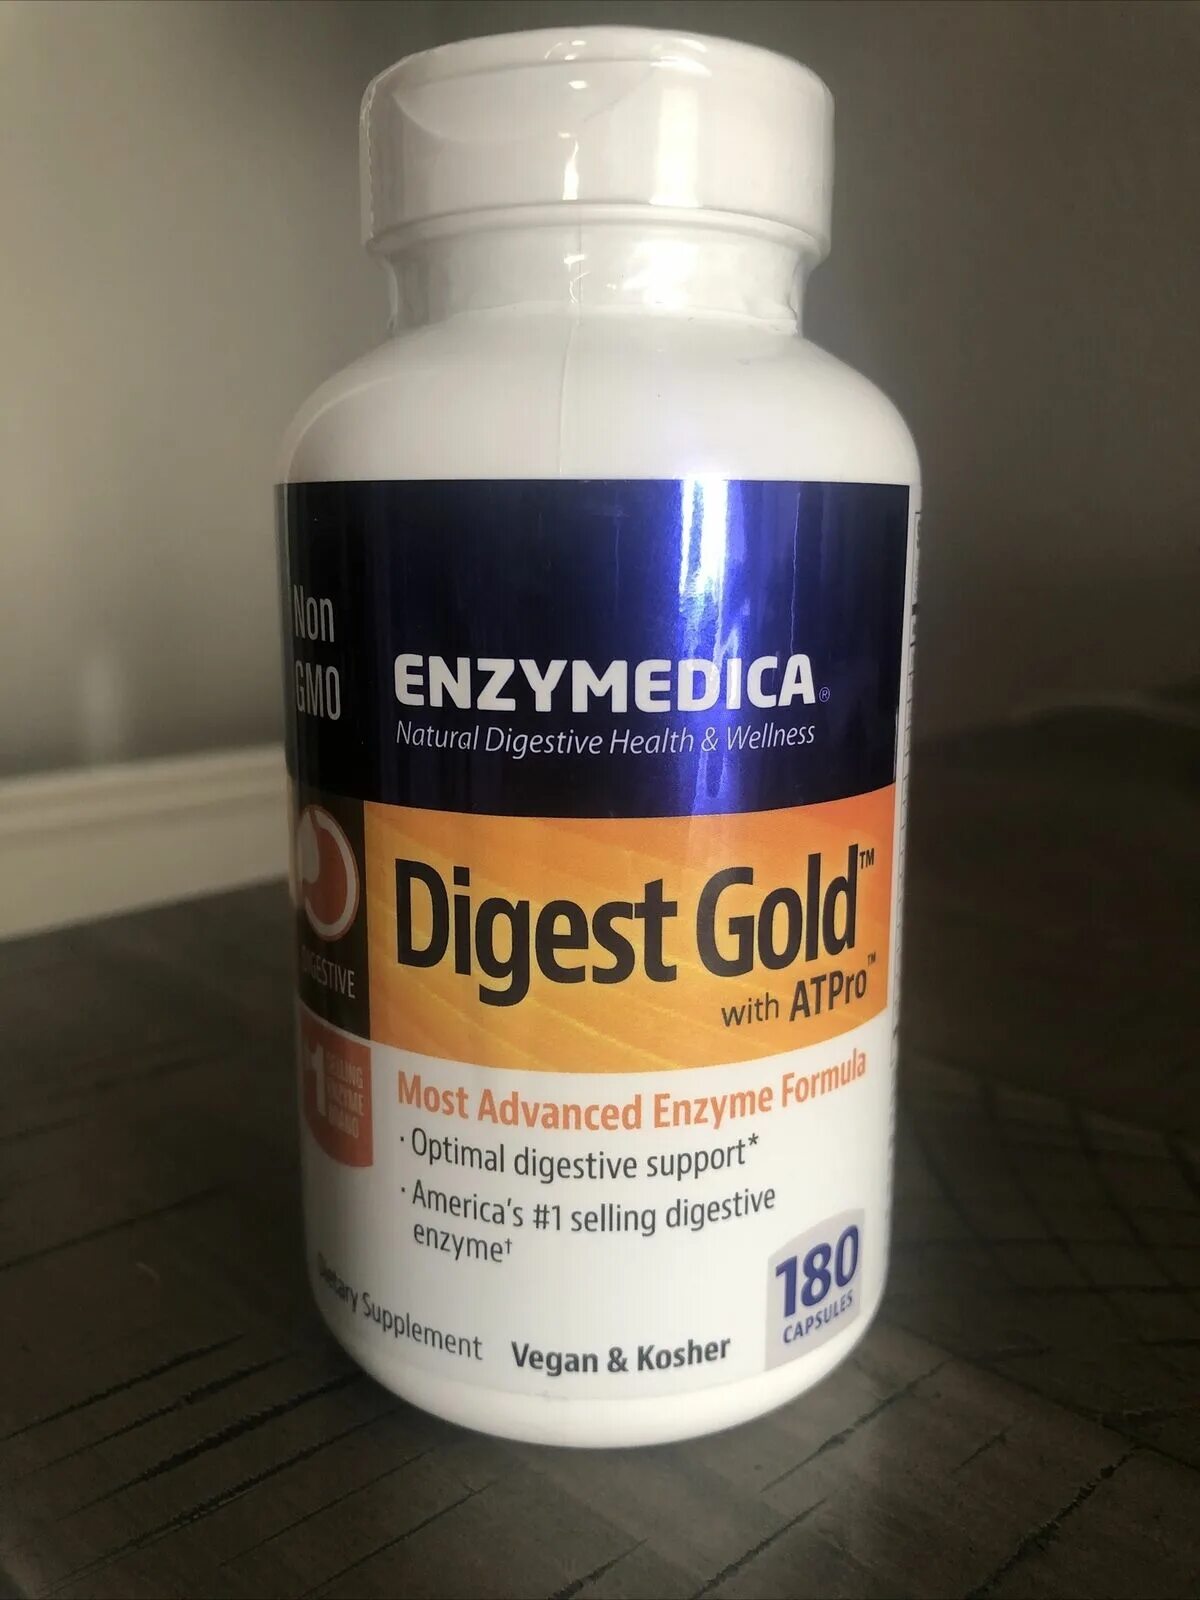 Enzymedica Digest Gold. Enzymedica Digest 180 капсул. Enzymedica Digest Gold with ATPRO.